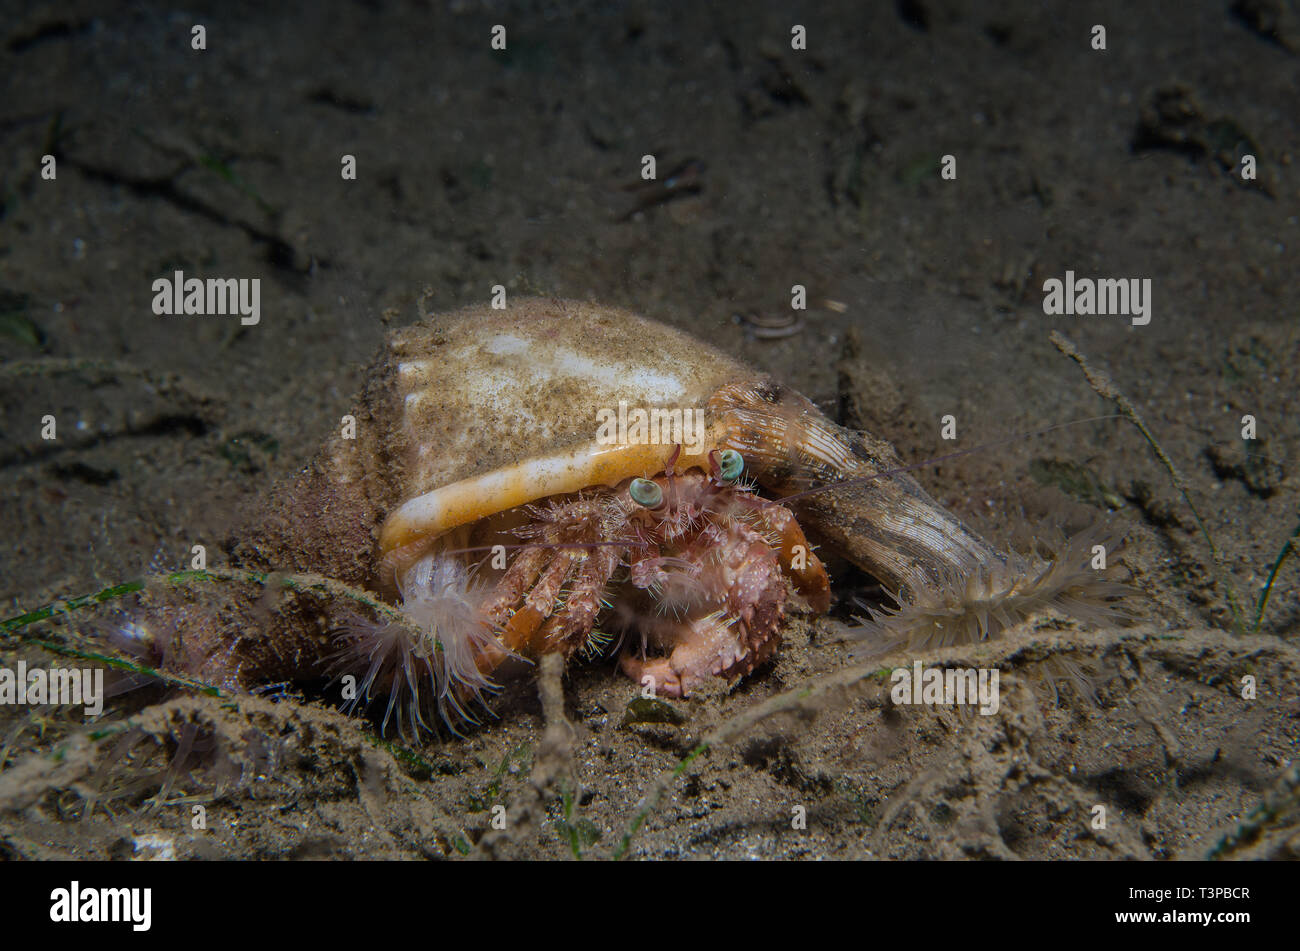 Hermit crab with anemones Dardanus pedunculatus and Calliactis miriam Basura divesite Anilao Batangas Philippines Pacific Ocean Stock Photo